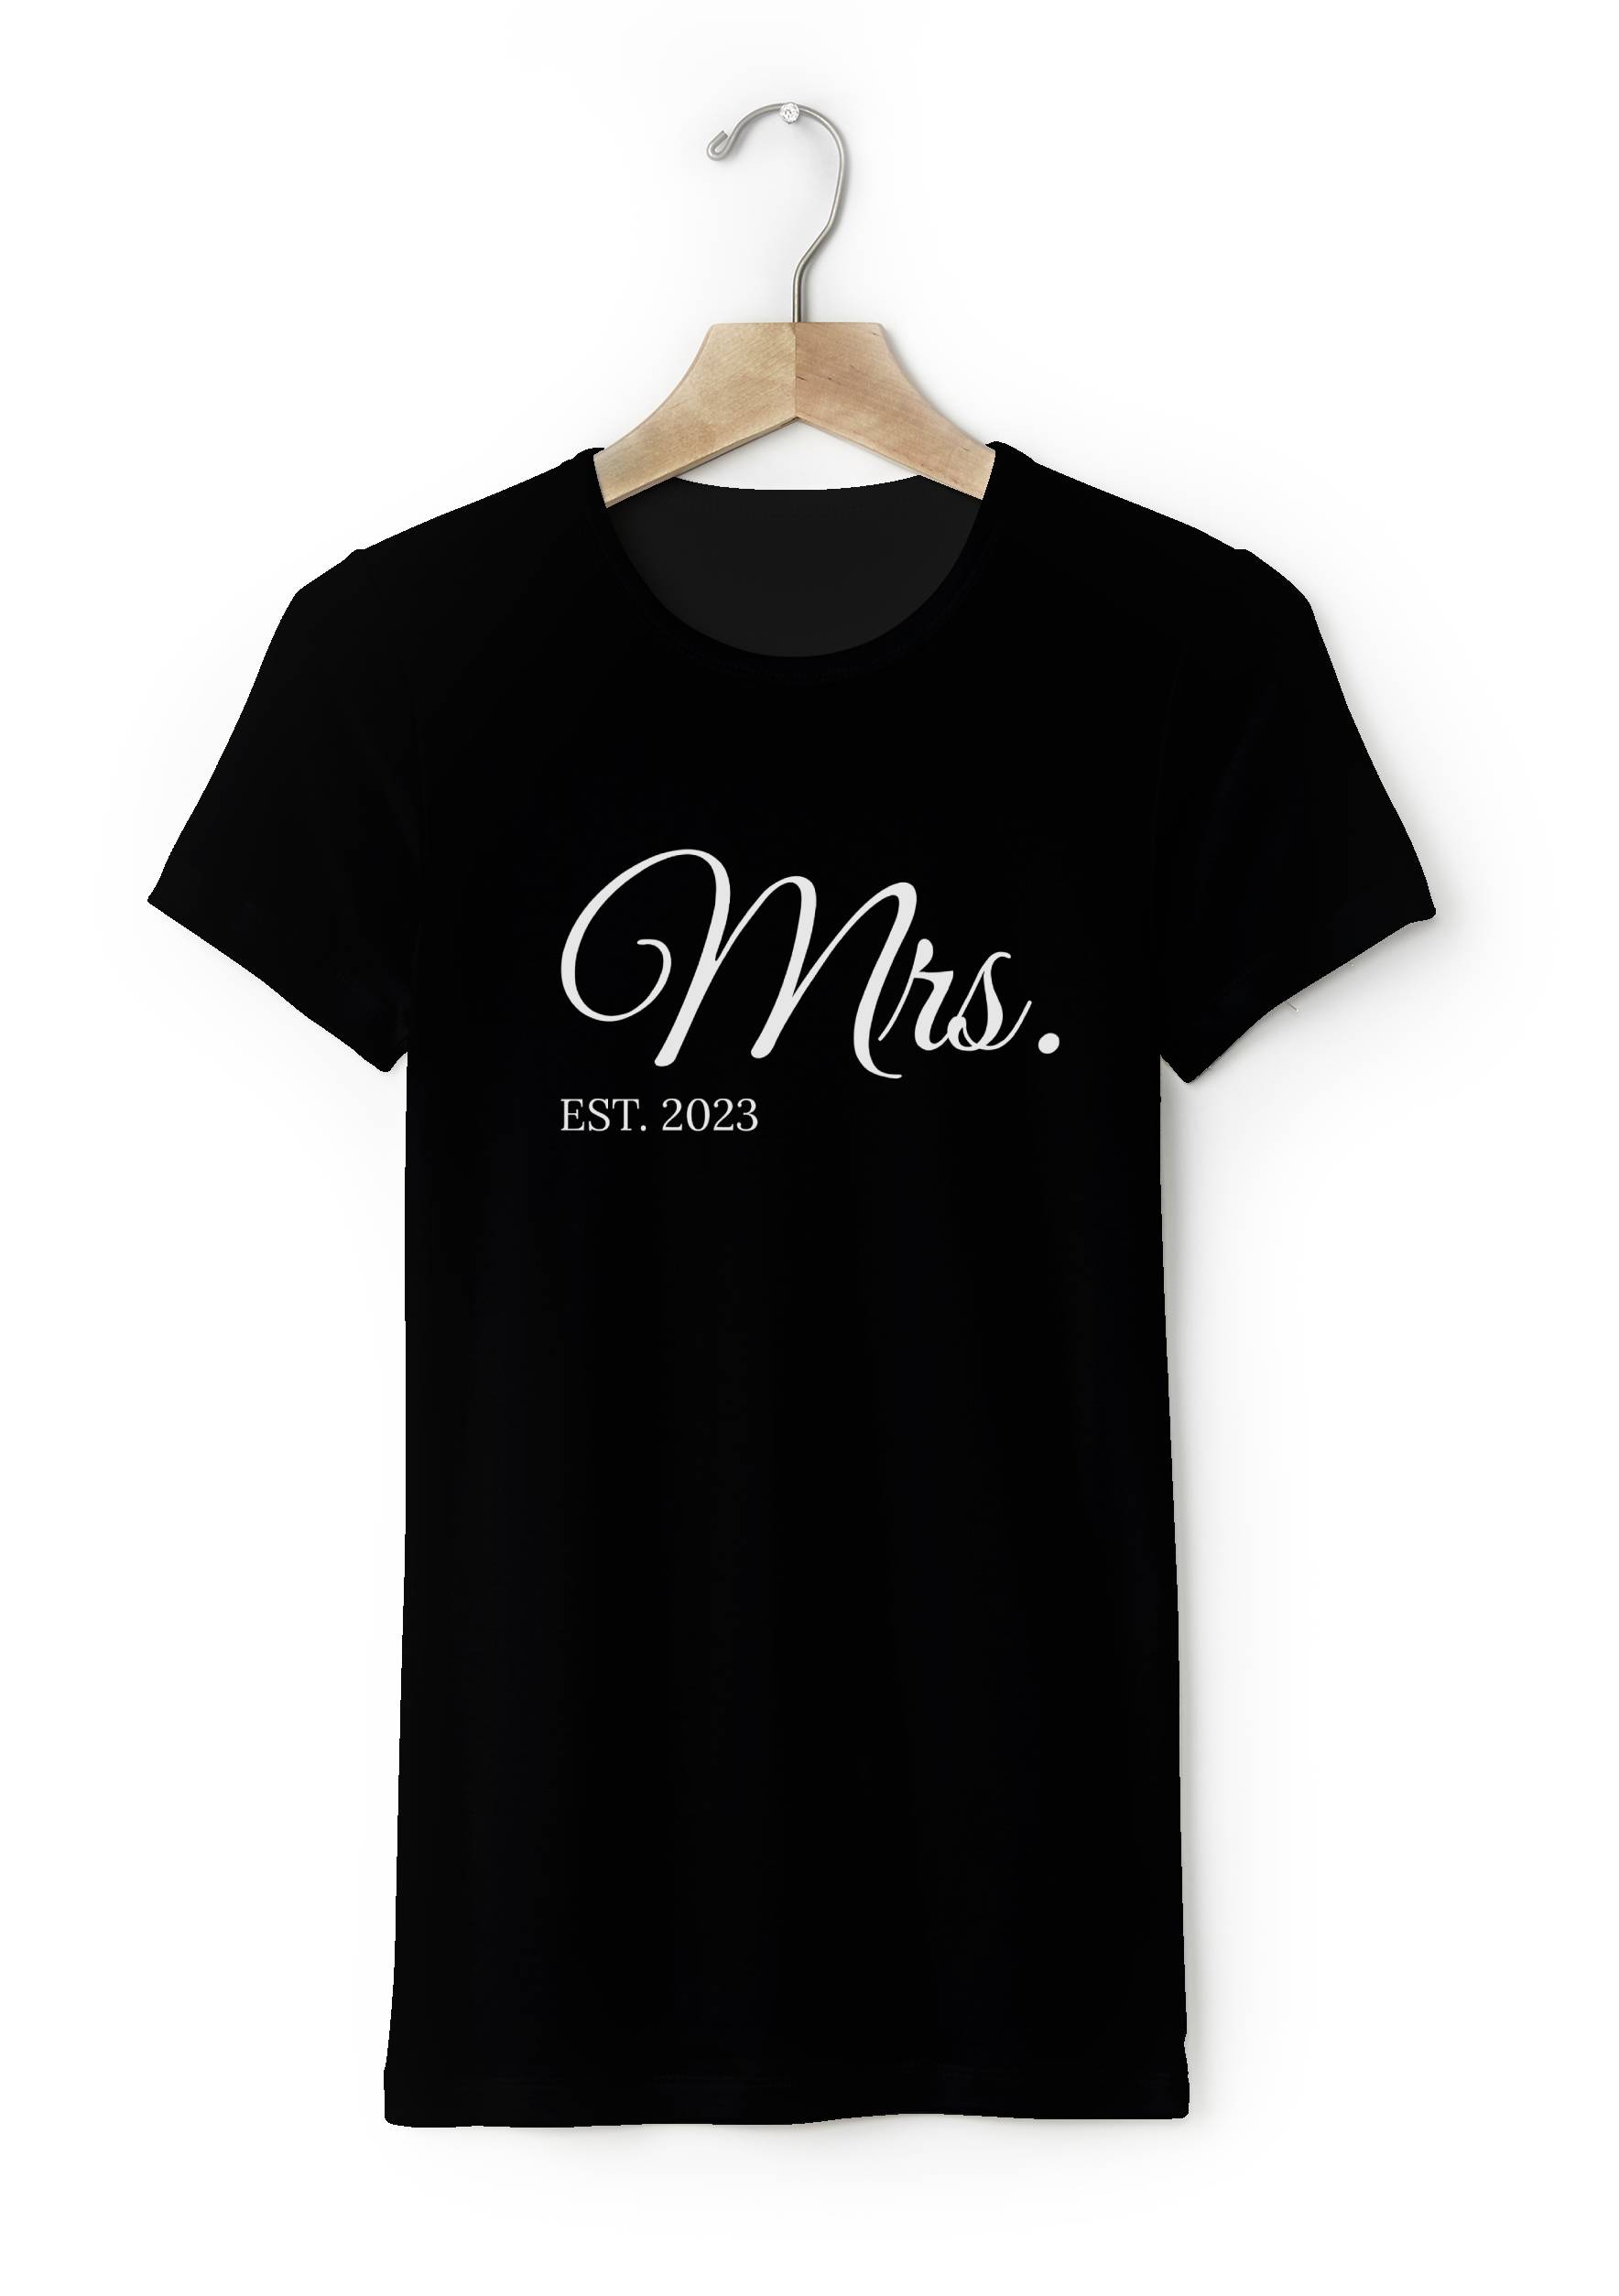 Tricou damă pereche cu text personalizat - Mrs. EST. Mărimea - Adult: M, Culori: Neagră